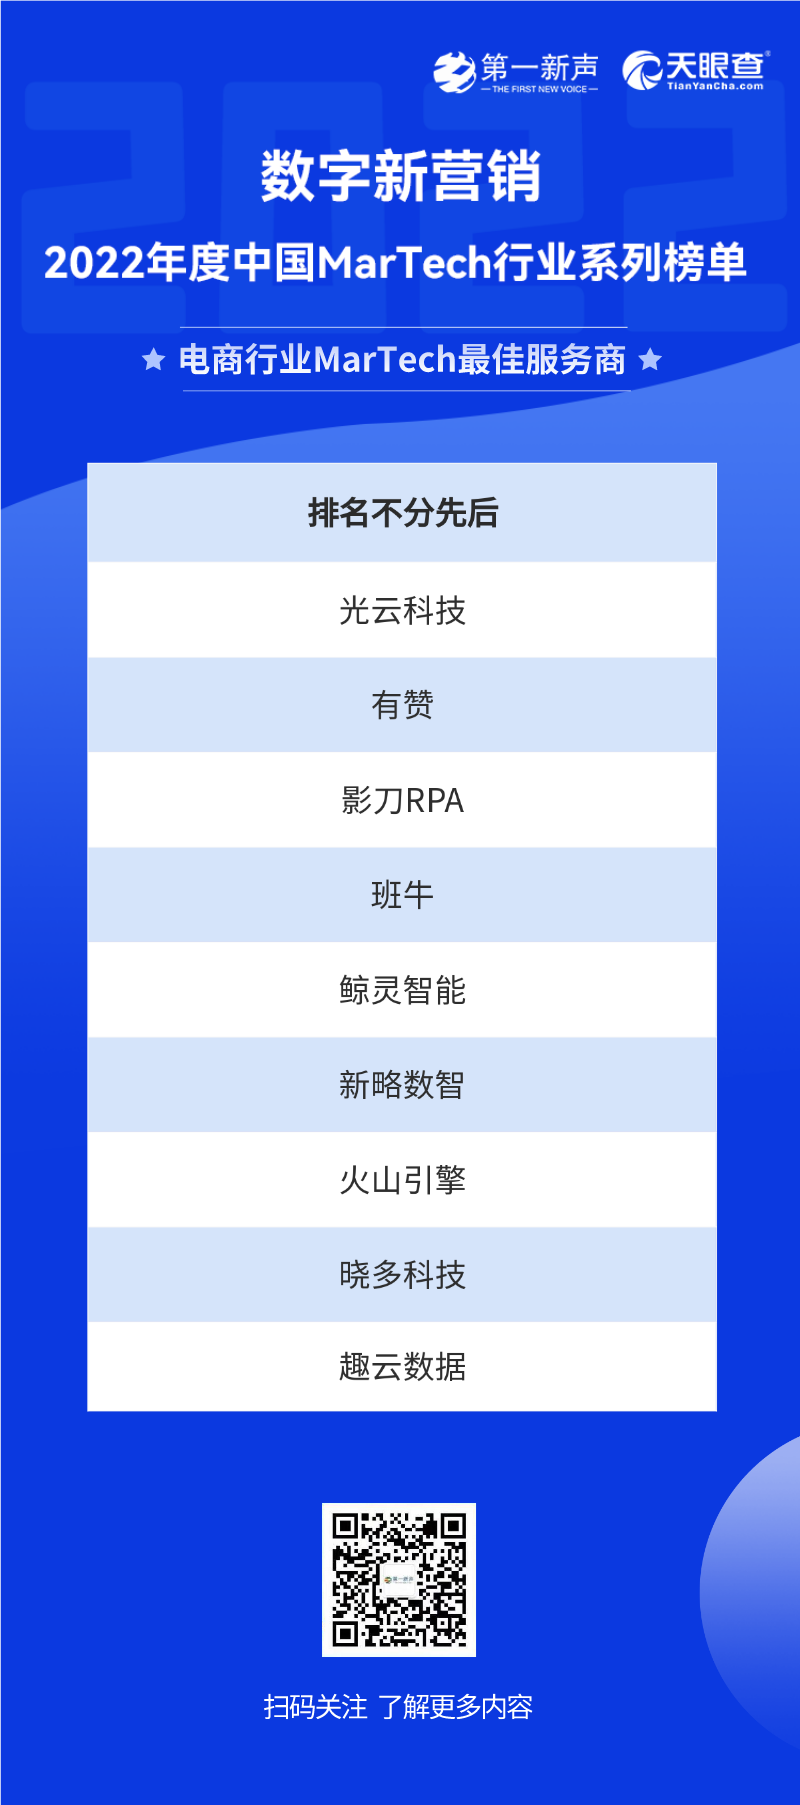 2022年度中国MarTech行业系列榜单正式发布，句子互动入选SCRM最佳服务商 第22张